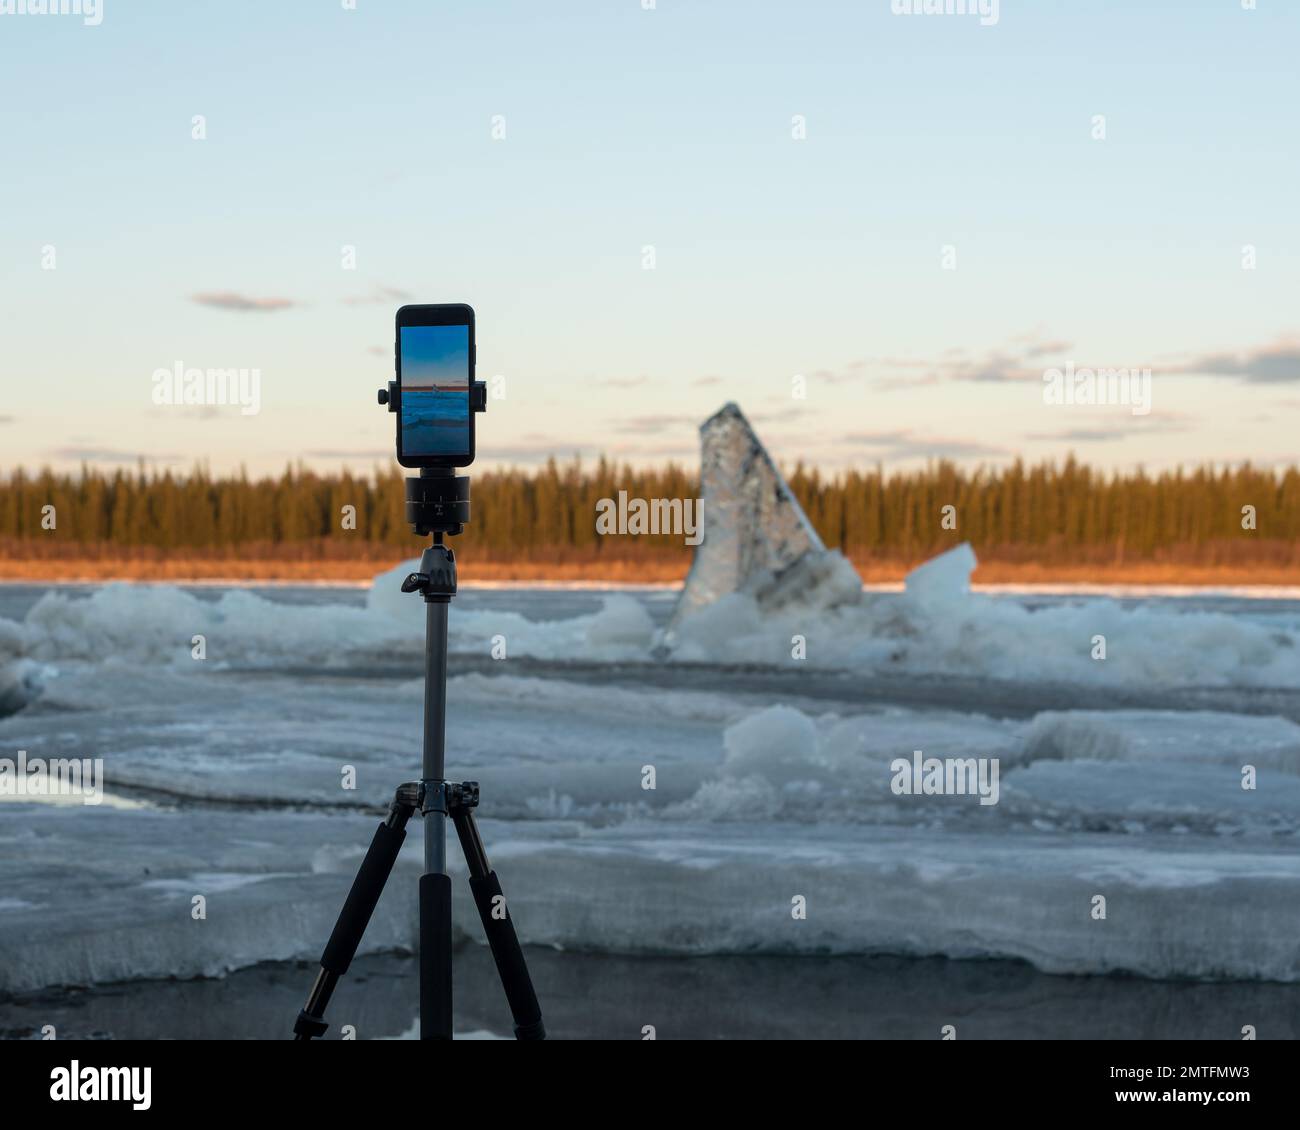 Un telefono cellulare scatta una foto della deriva di ghiaccio primaverile durante il giorno, in piedi su un treppiede con un meccanismo rotante per le riprese panoramiche, contro Foto Stock